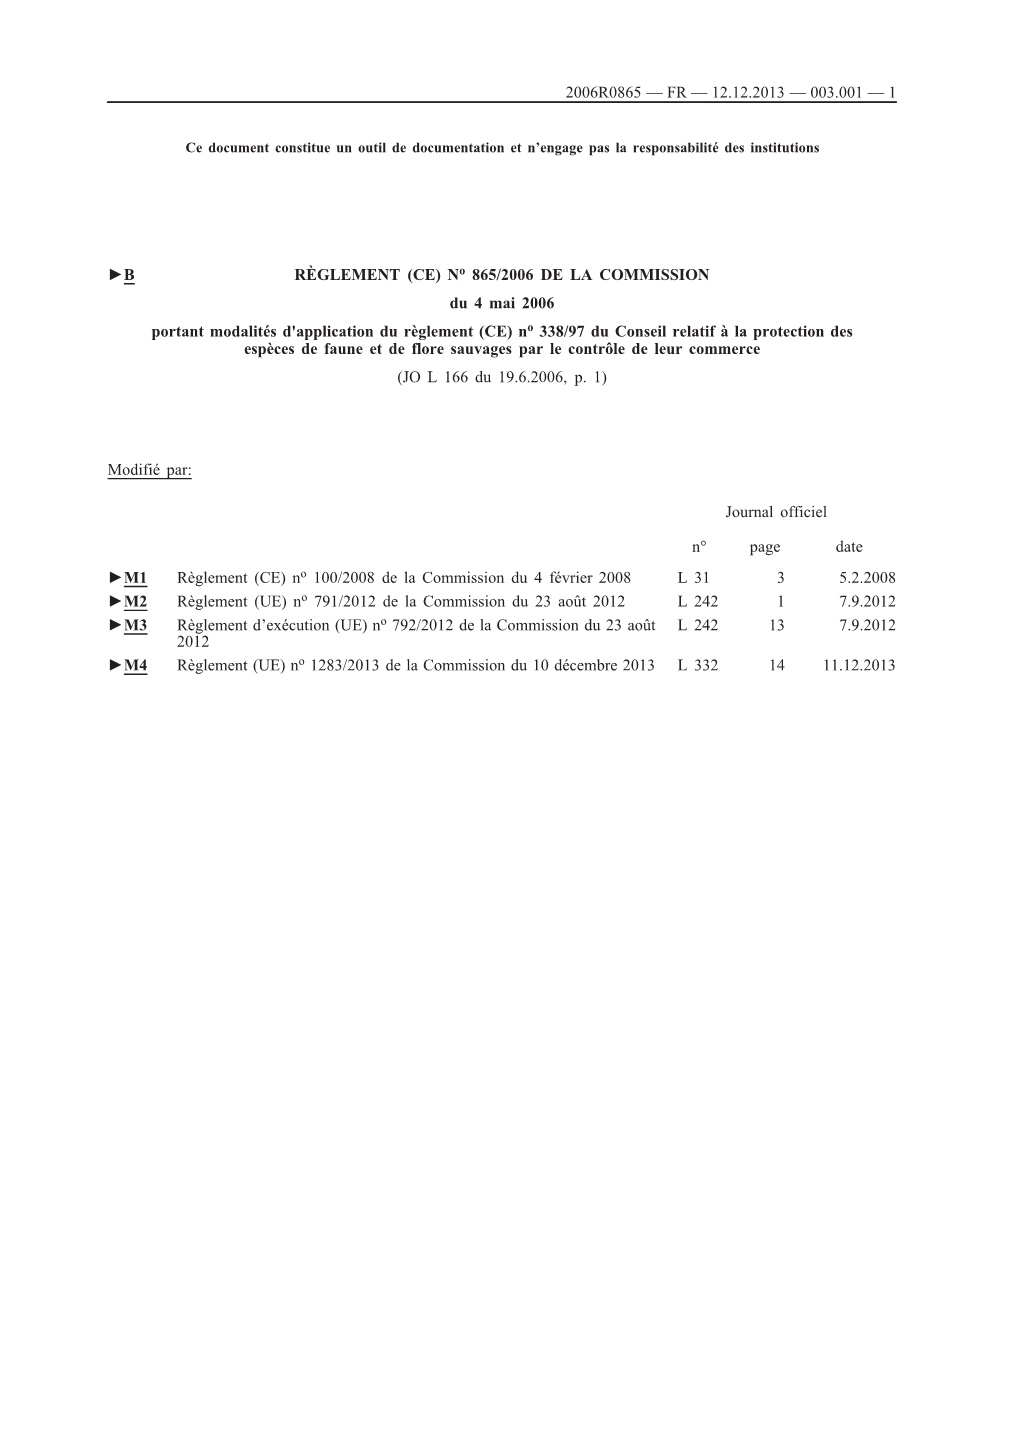 B RÈGLEMENT (CE) No 865/2006 DE LA COMMISSION Du 4 Mai 2006